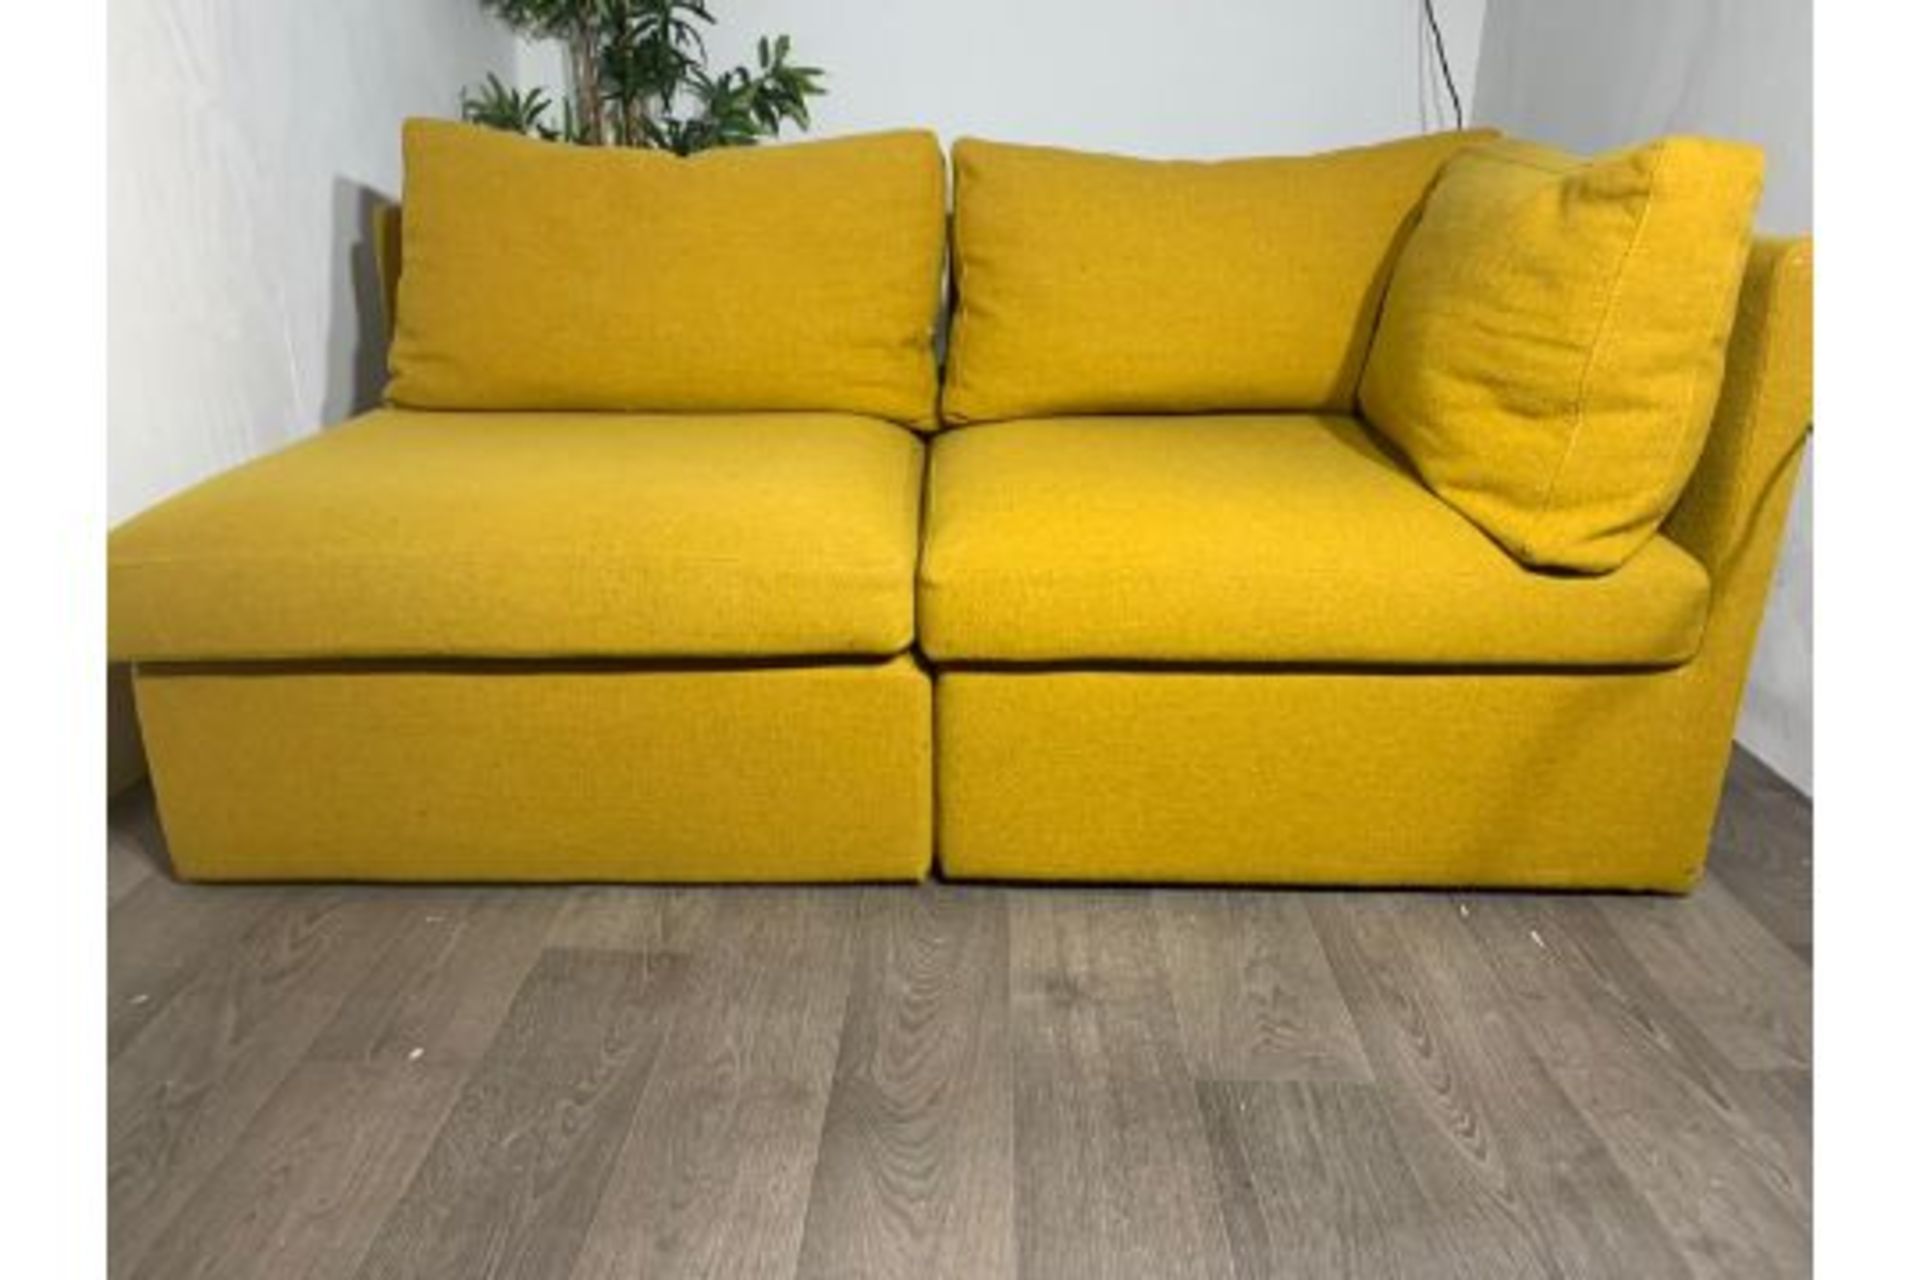 Modular 3 piece sofa - Image 4 of 6